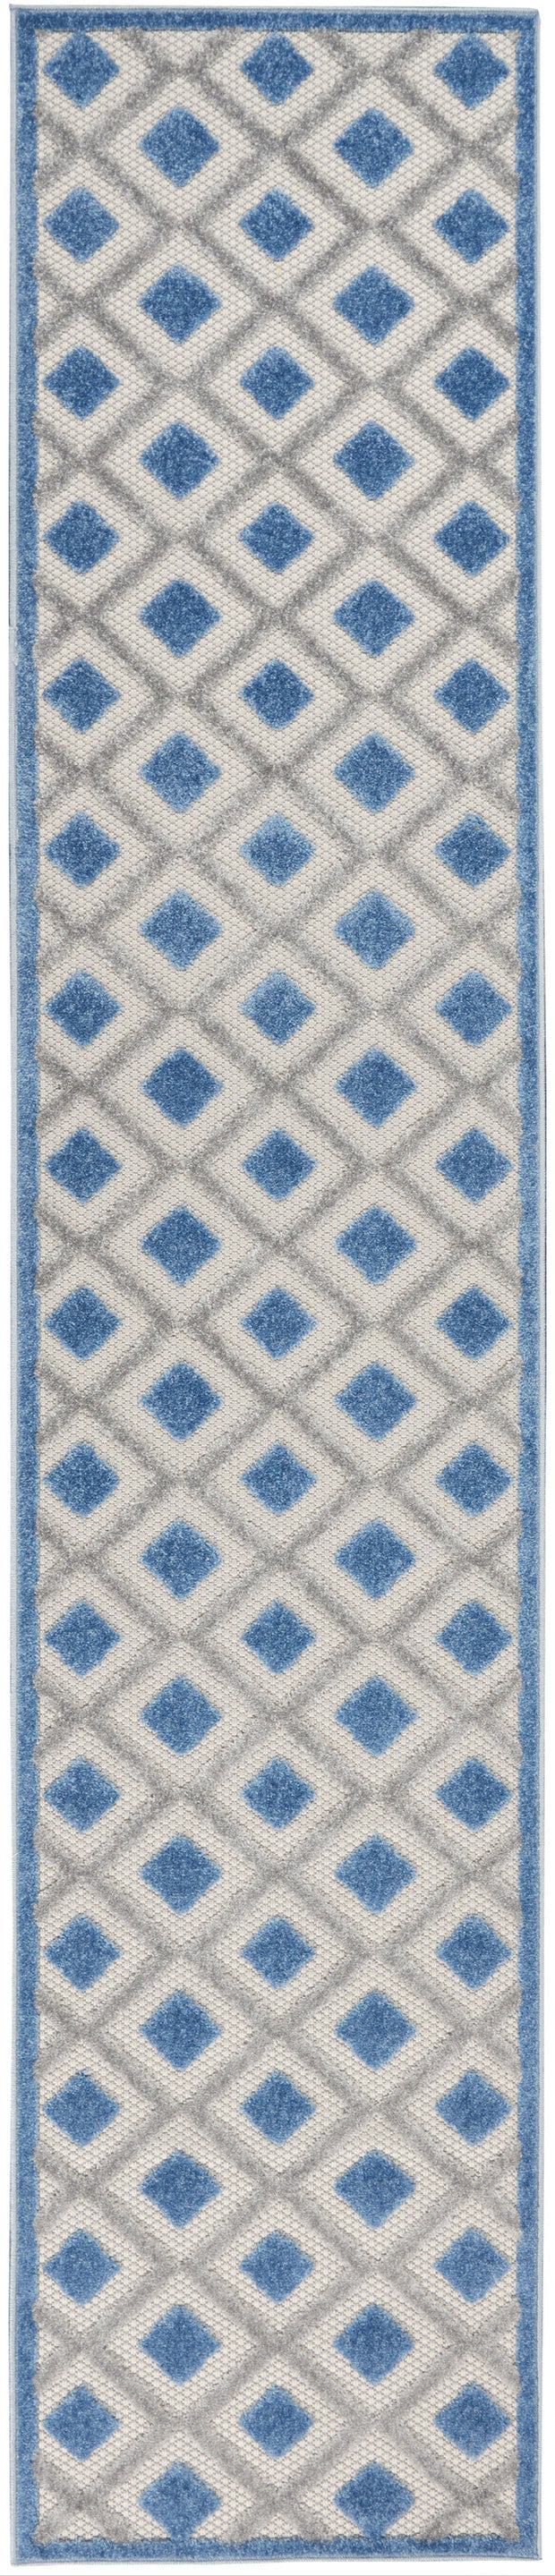 aloha blue grey rug by nourison 99446829931 redo 3